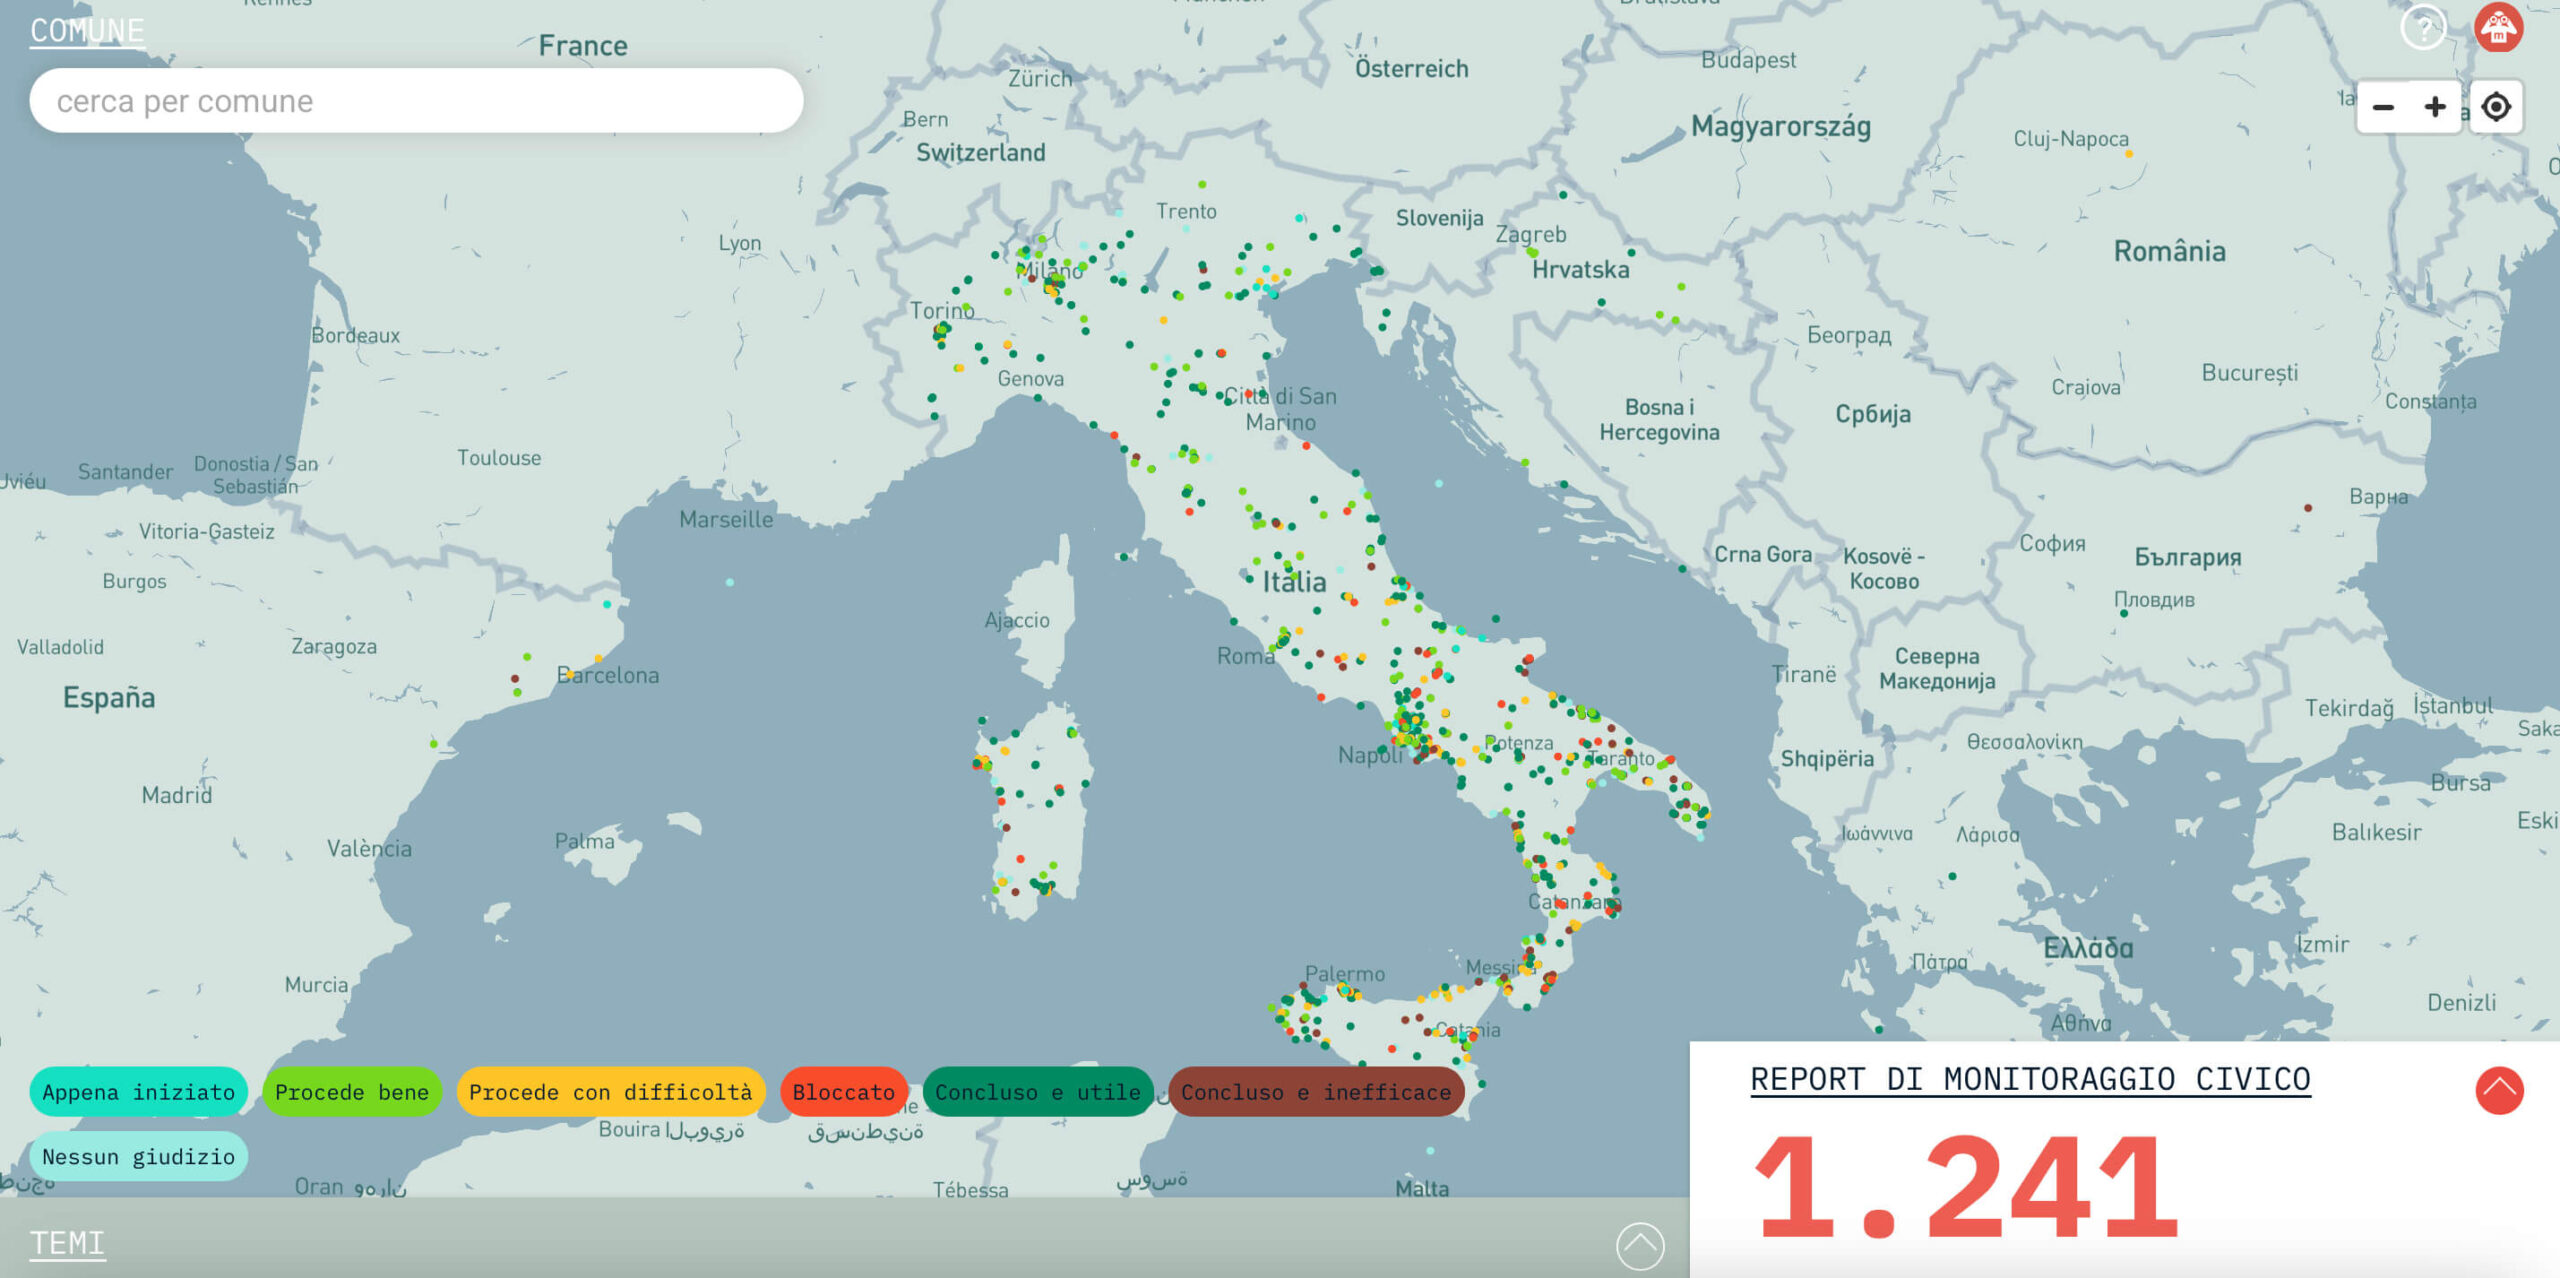 Una schermata dal sito di Monithon con la mappa dei progetti monitorati - monithon.eu